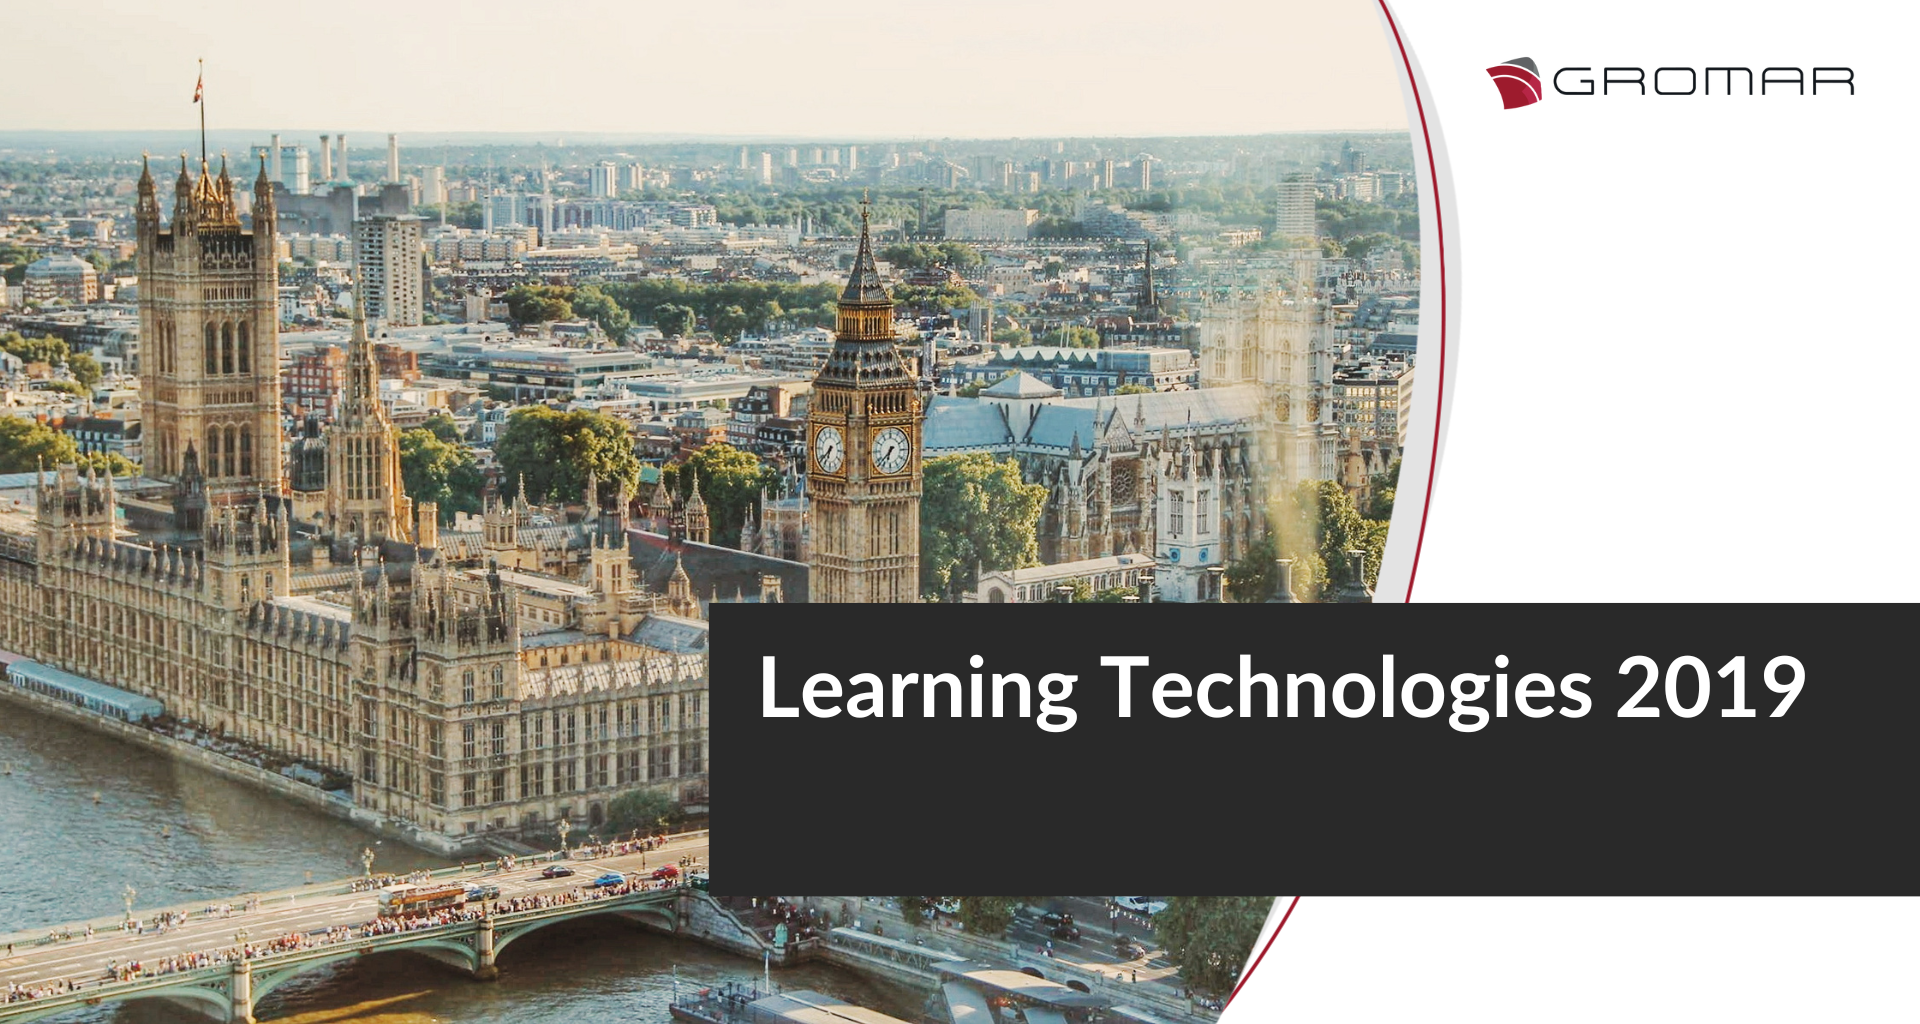 Spotkaj się z nami na targach LEARNING TECHNOLOGIES 2019!